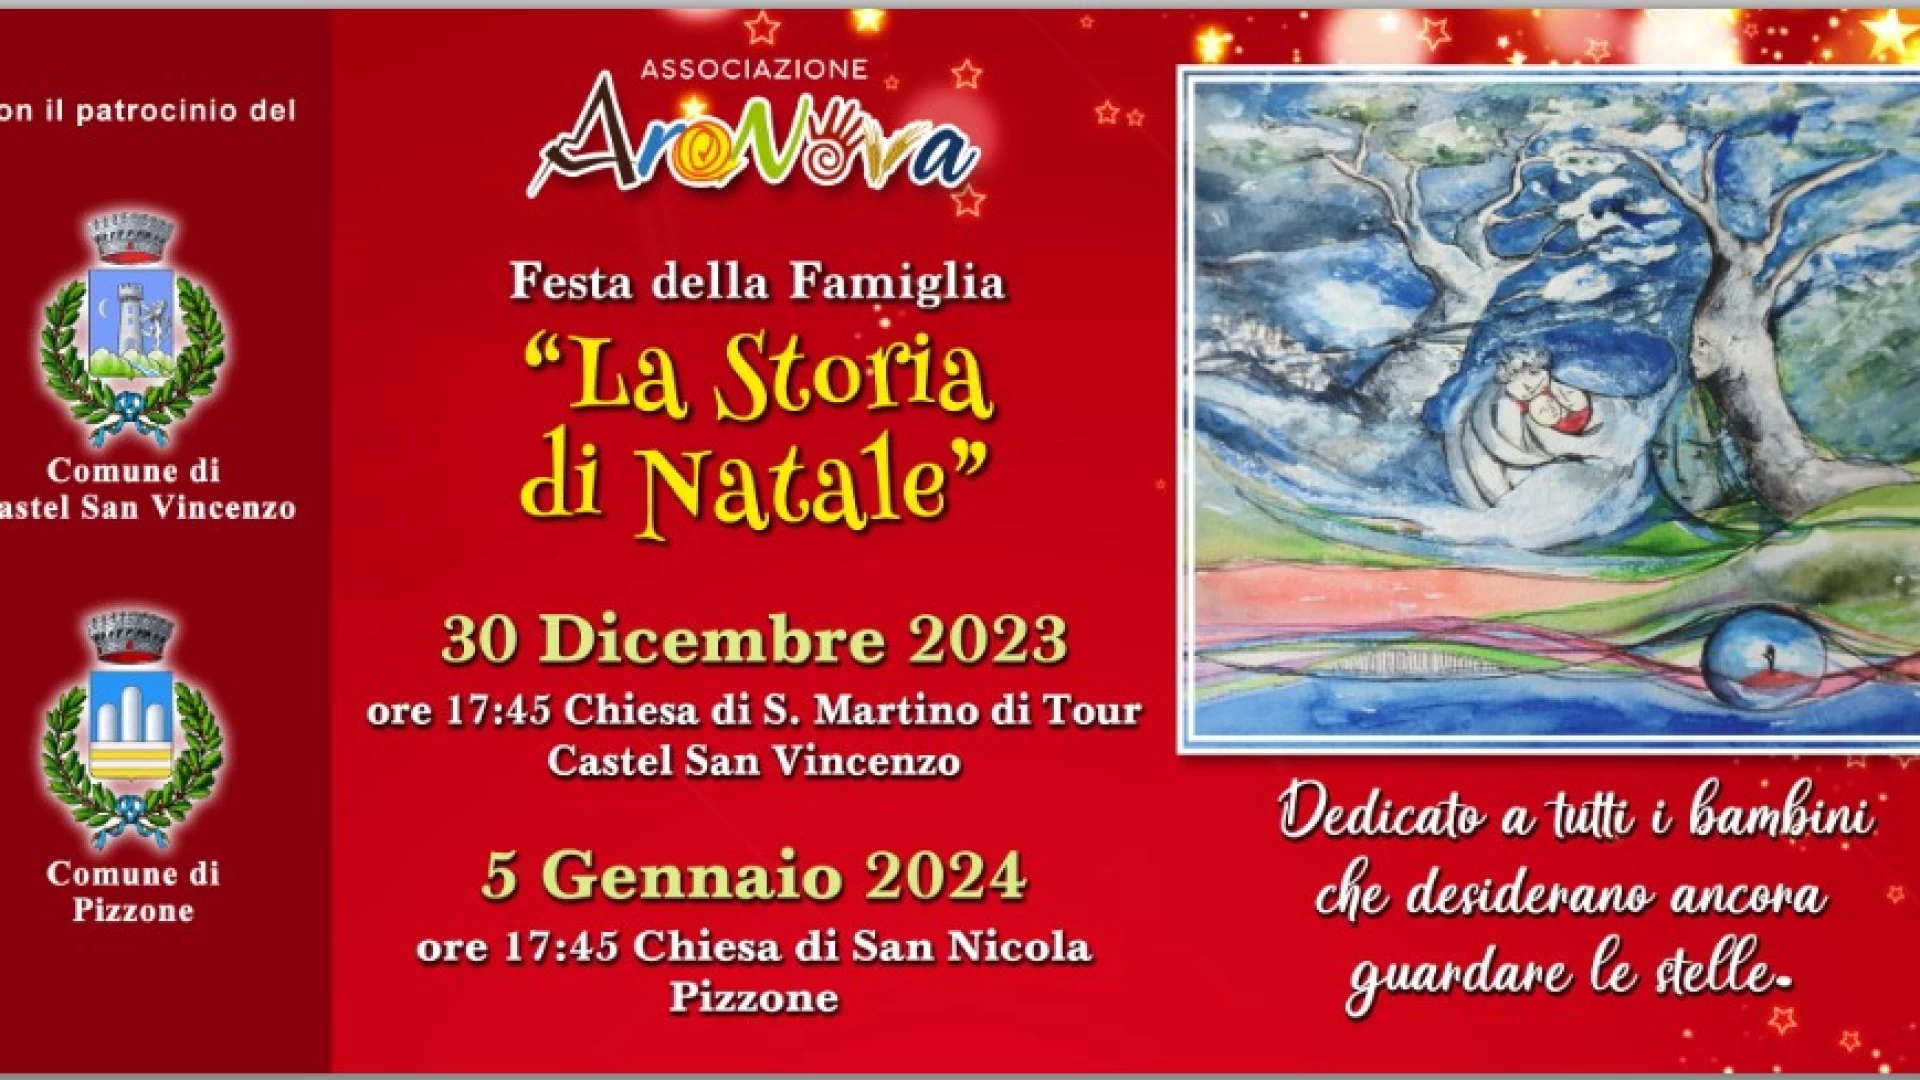 “La Storia di Natale”, in scena a Castel San Vincenzo e Pizzone lo spettacolo natalizio organizzato dall’associazione culturale “AraNova”.